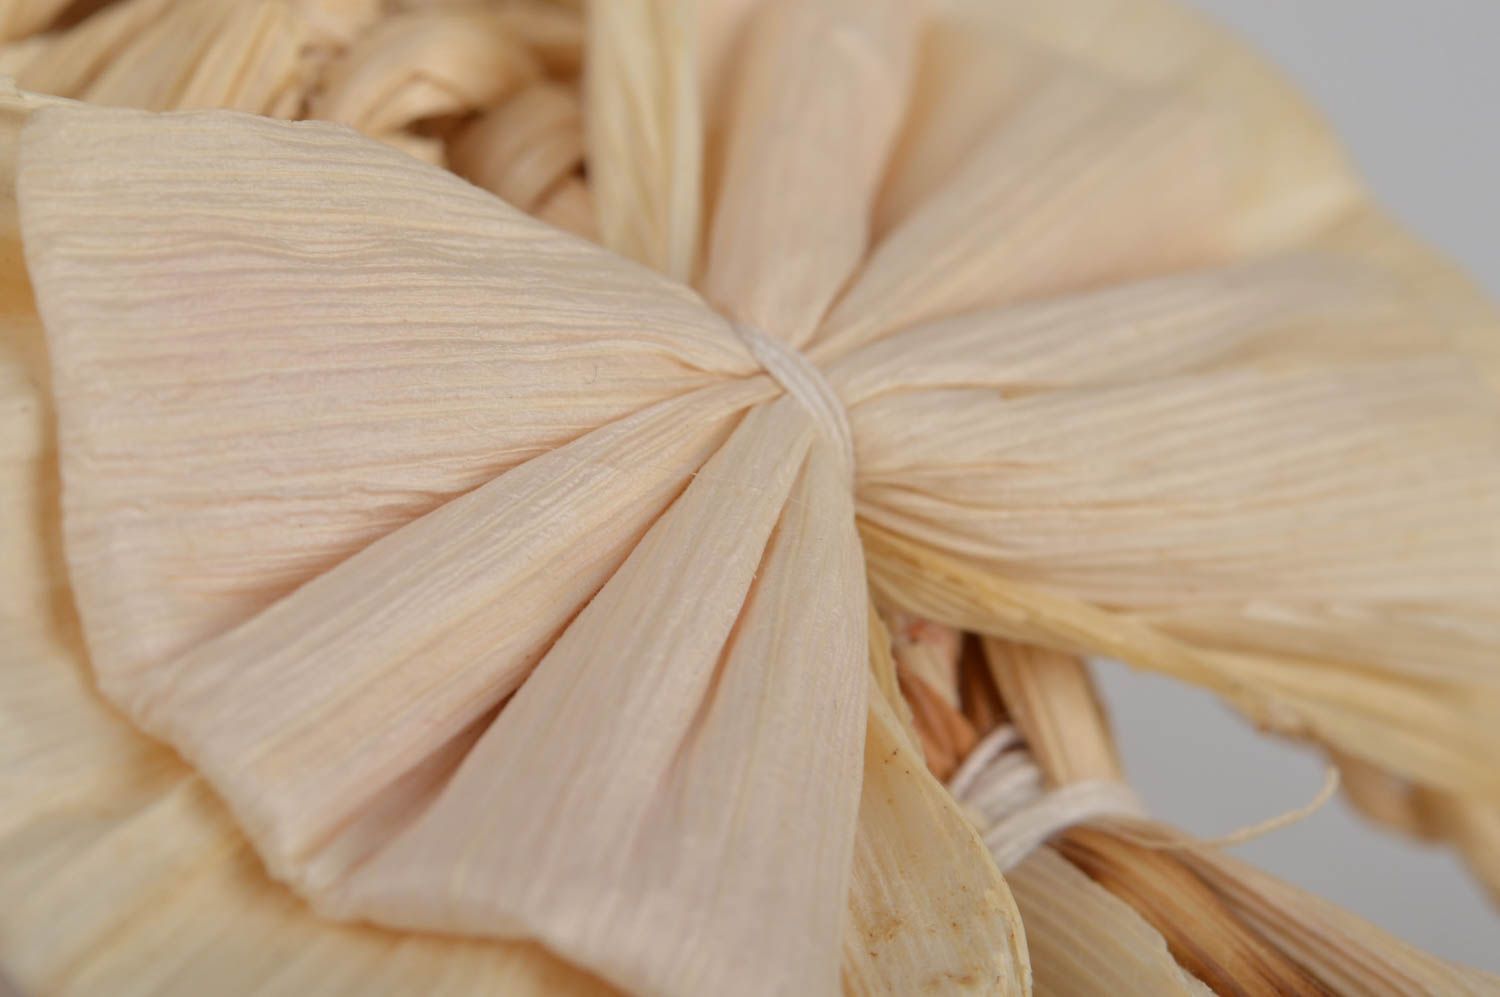 Колокольчик с бантиком из кукурузных листьев плетеный вручную для декора дома фото 4